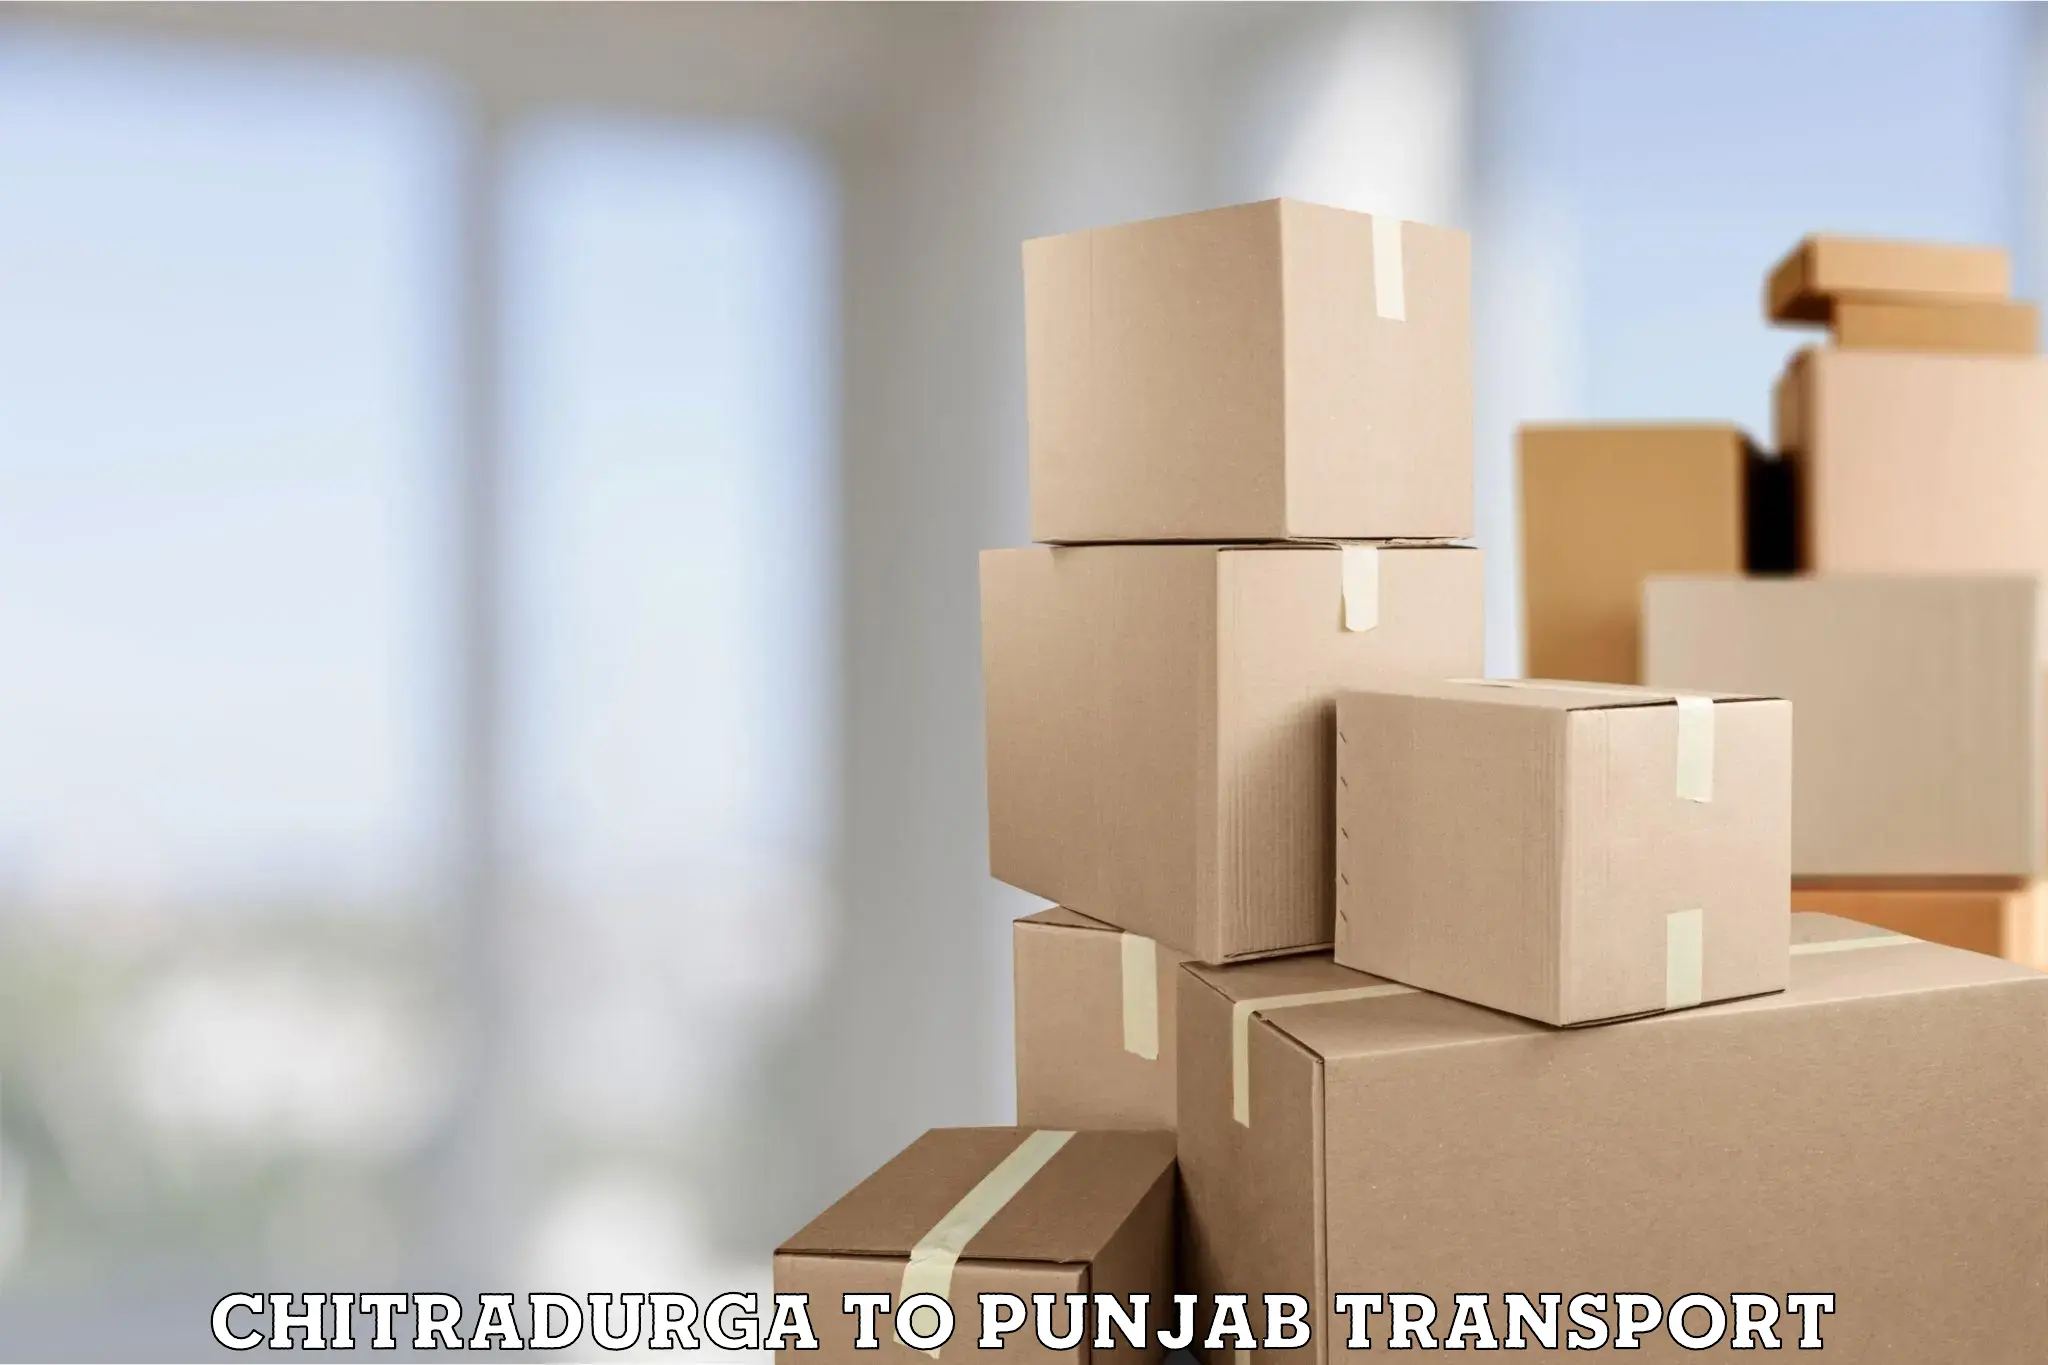 Two wheeler parcel service Chitradurga to Punjab